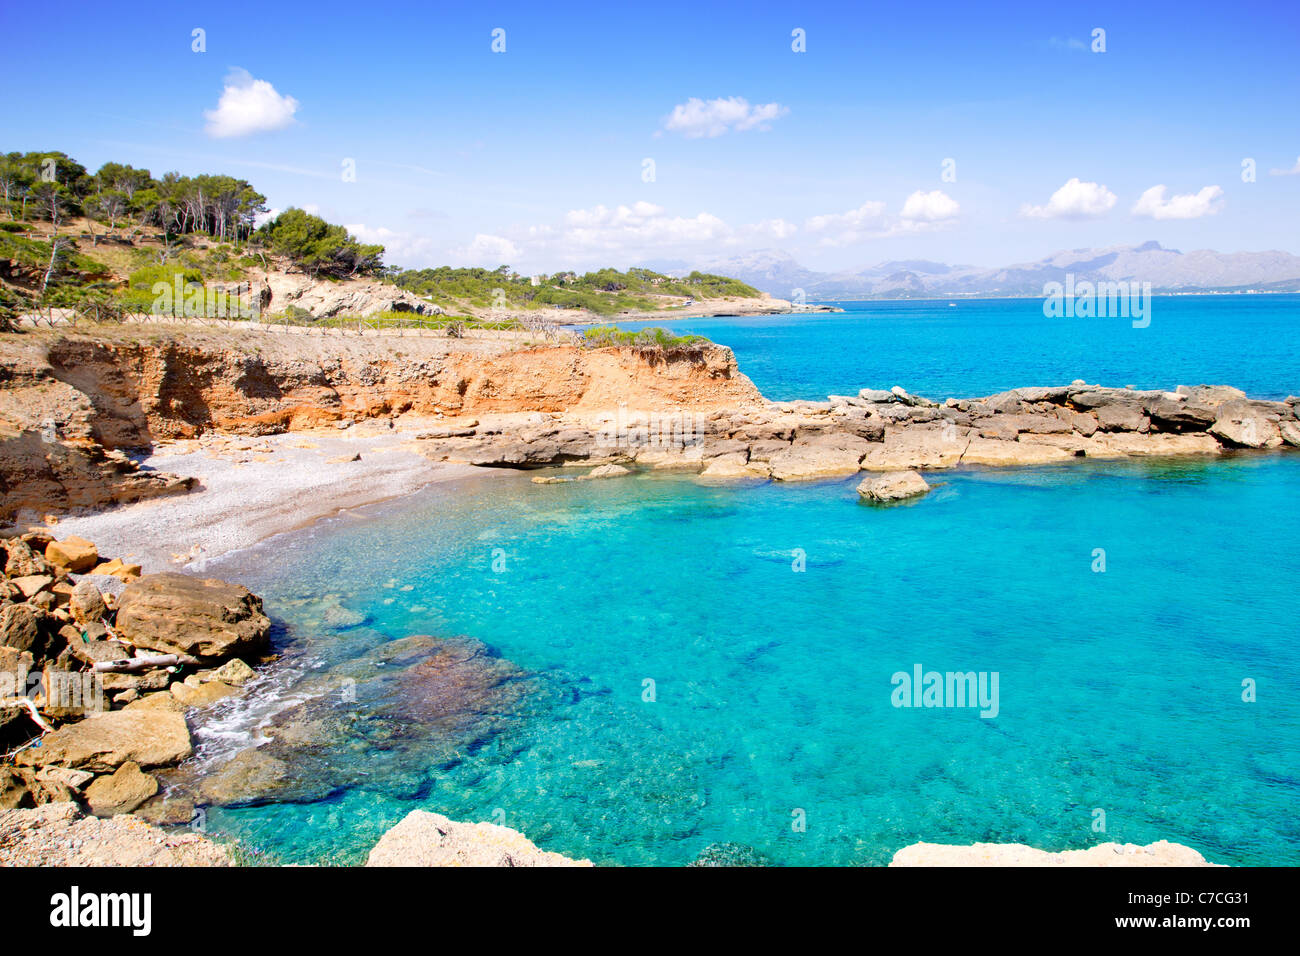 Alcudia in Mallorca la Victoria turquoise beach near s Illot from Balearic Islands Stock Photo